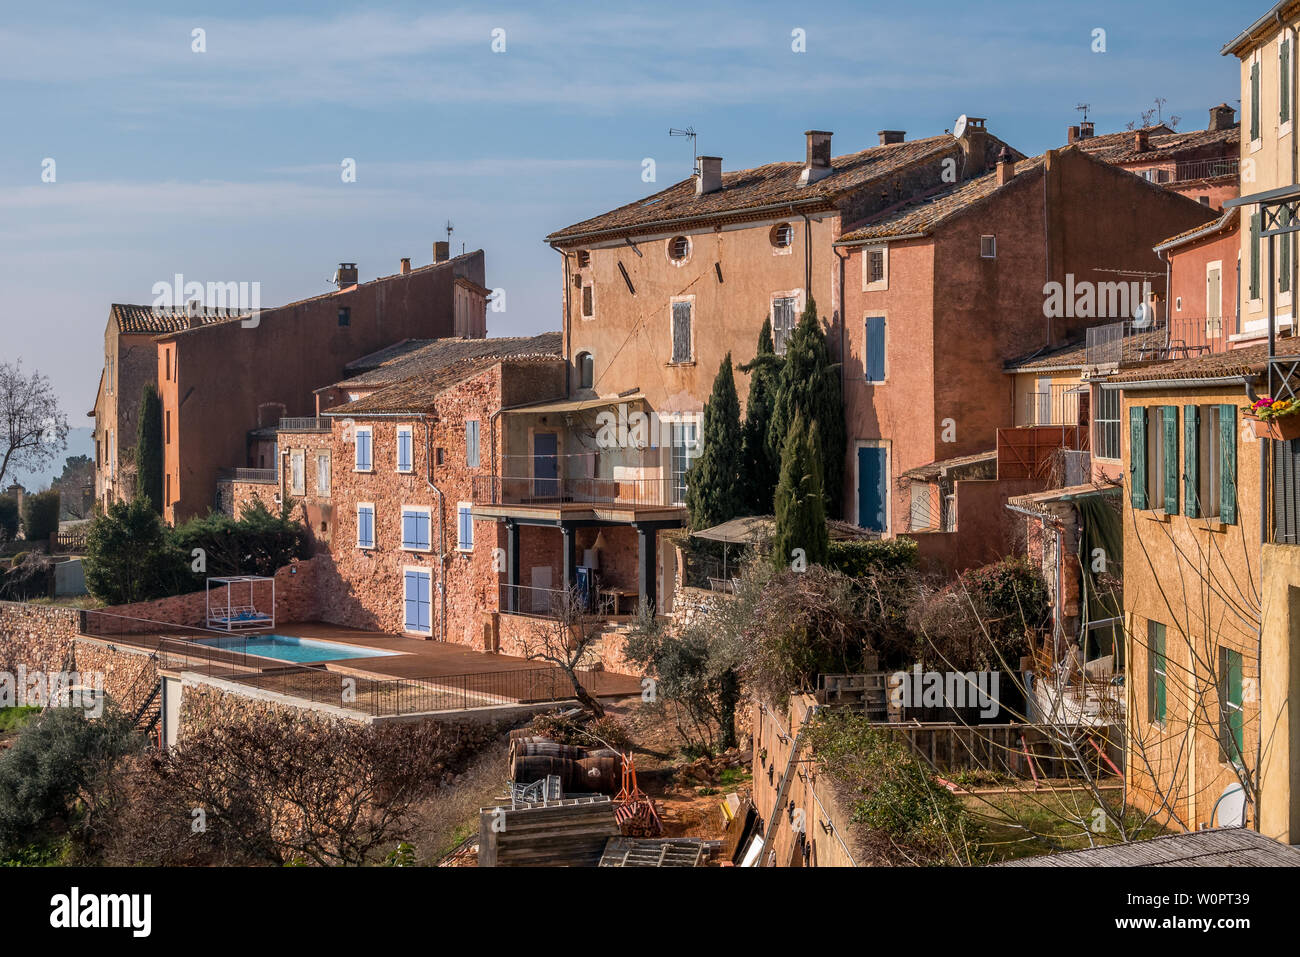 Roussillon, Frankreich - Januar 22, 2019: Häuser und Gebäude Fassade mit dem Ocker Farbe mit klarem blauen Himmel als Hintergrund Stockfoto